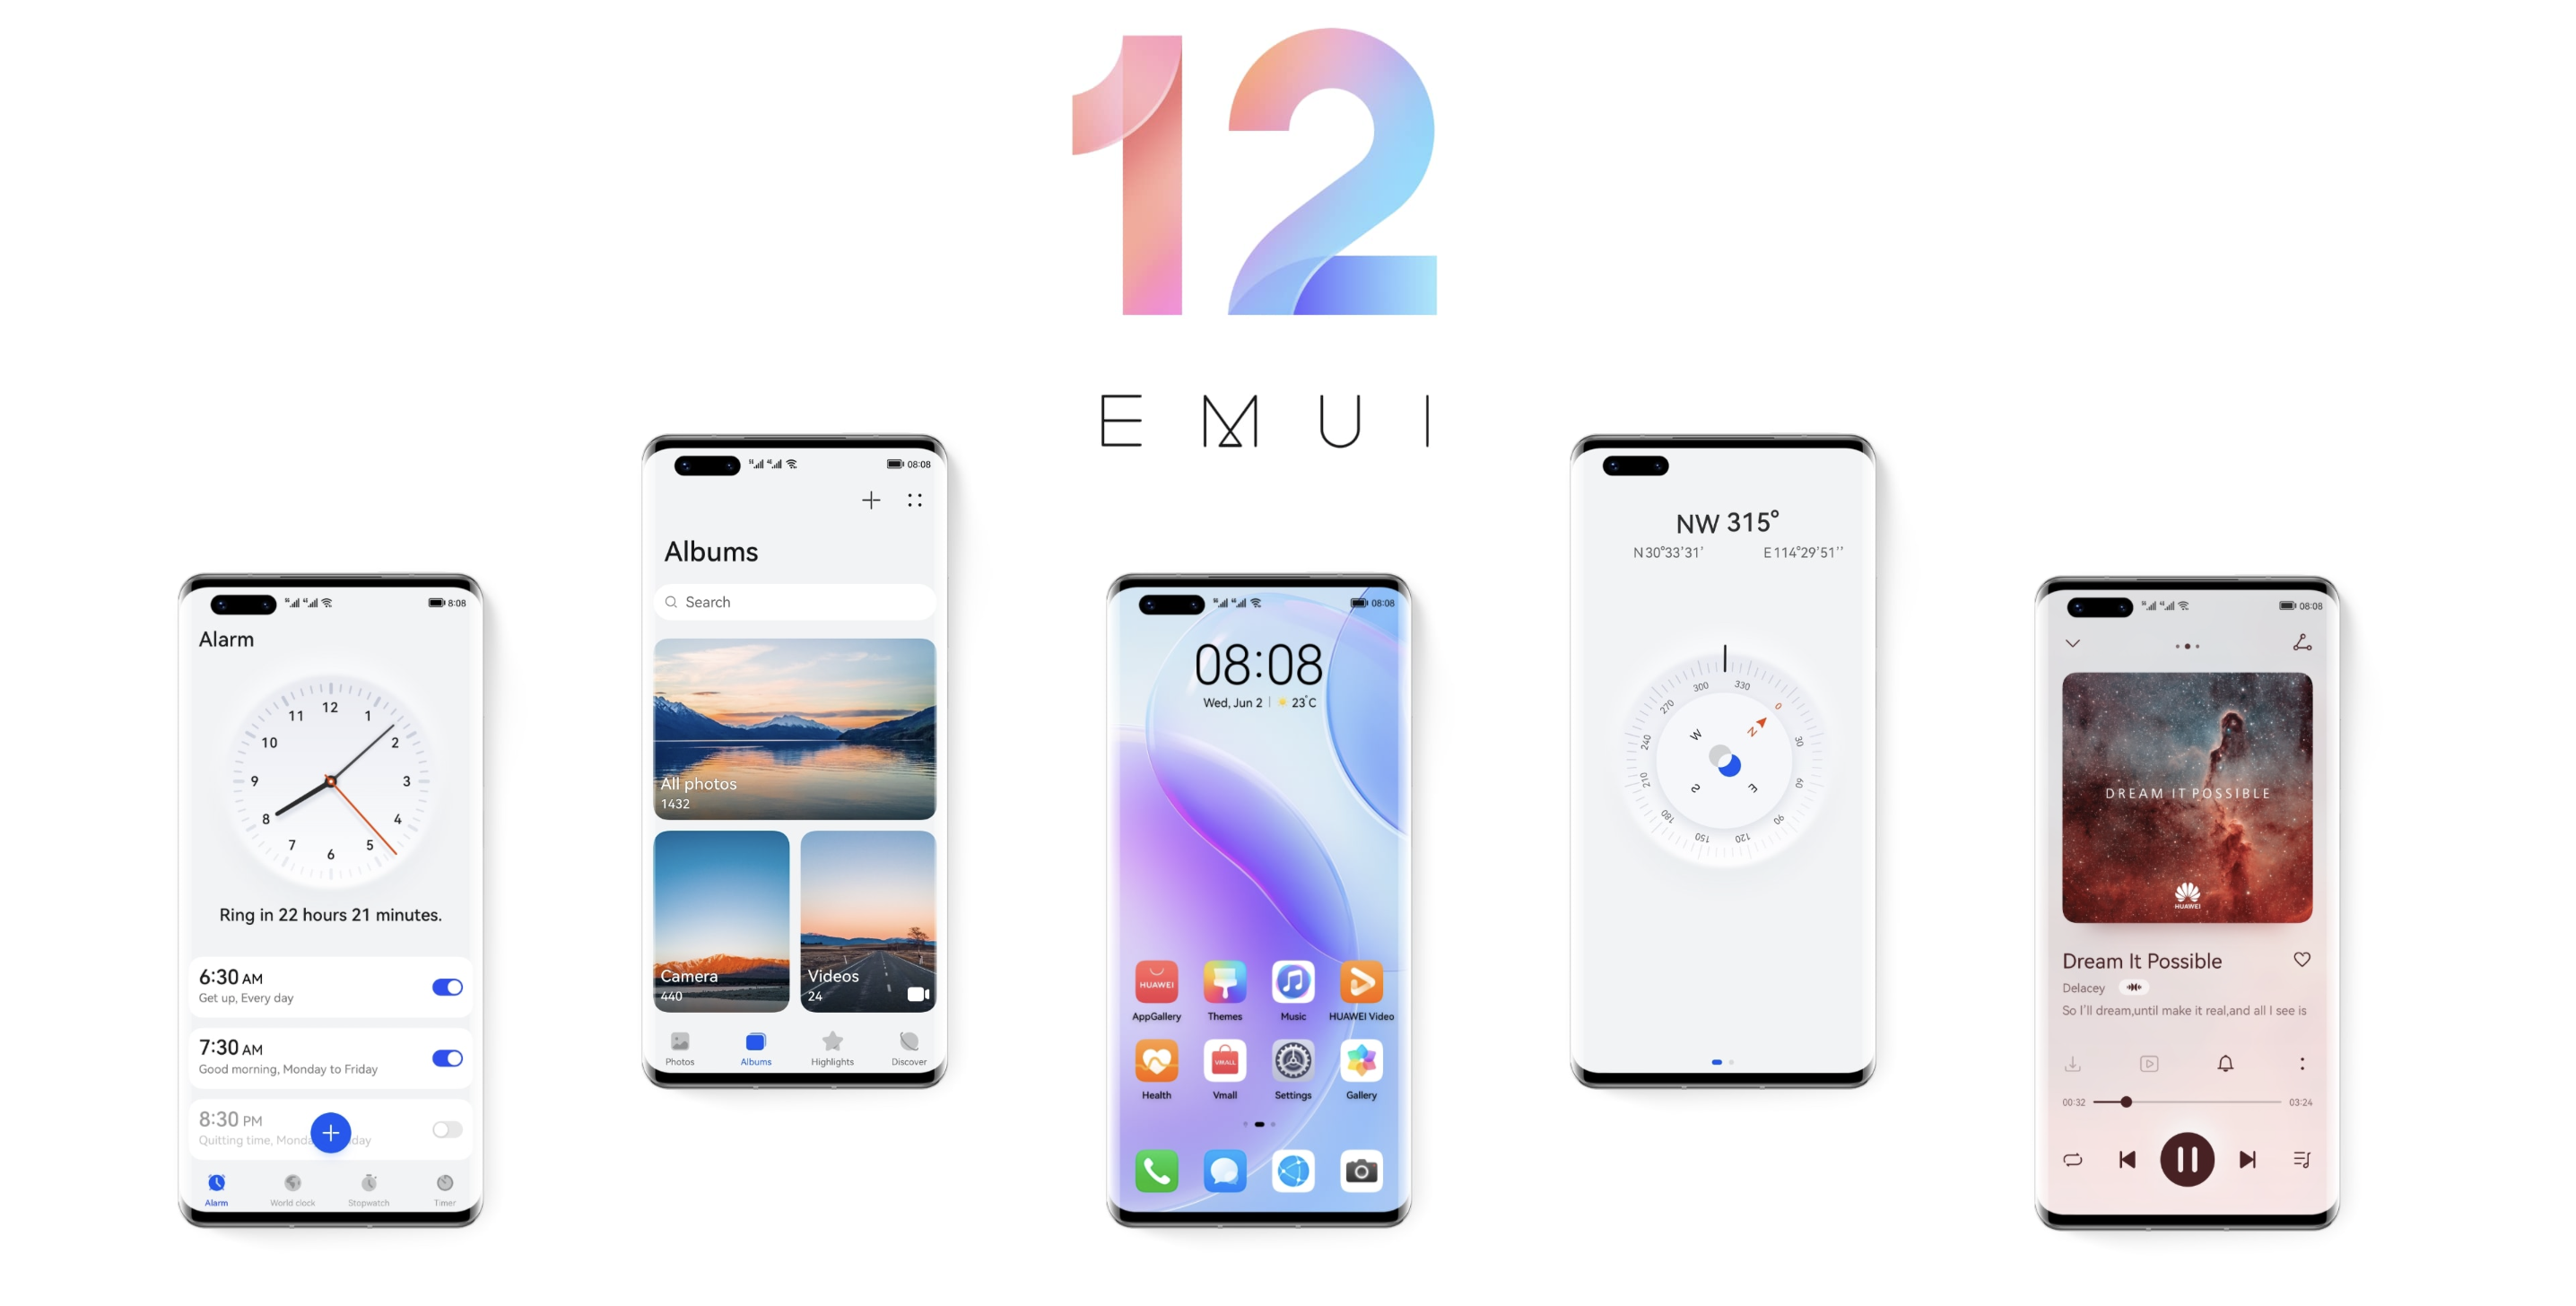 Несподівано: Huawei представила EMUI 12 з новими функціями і оновленим інтерфейсом